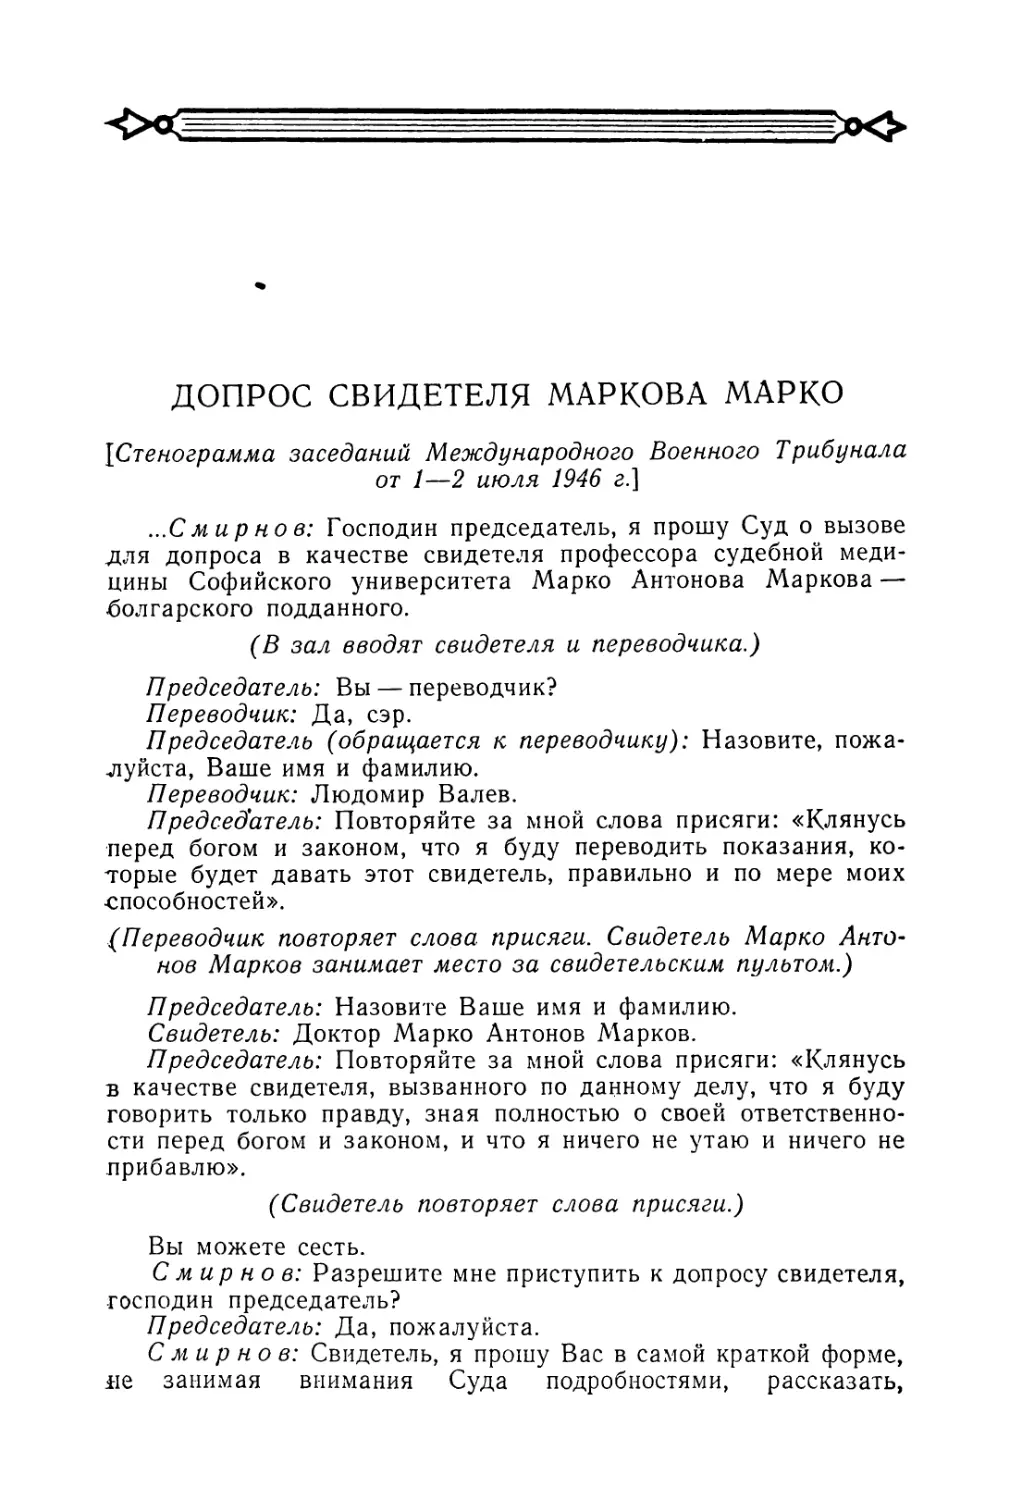 Допрос свидетеля Маркова Марко в заседаниях Трибунала 1—2 июля 1946 г.